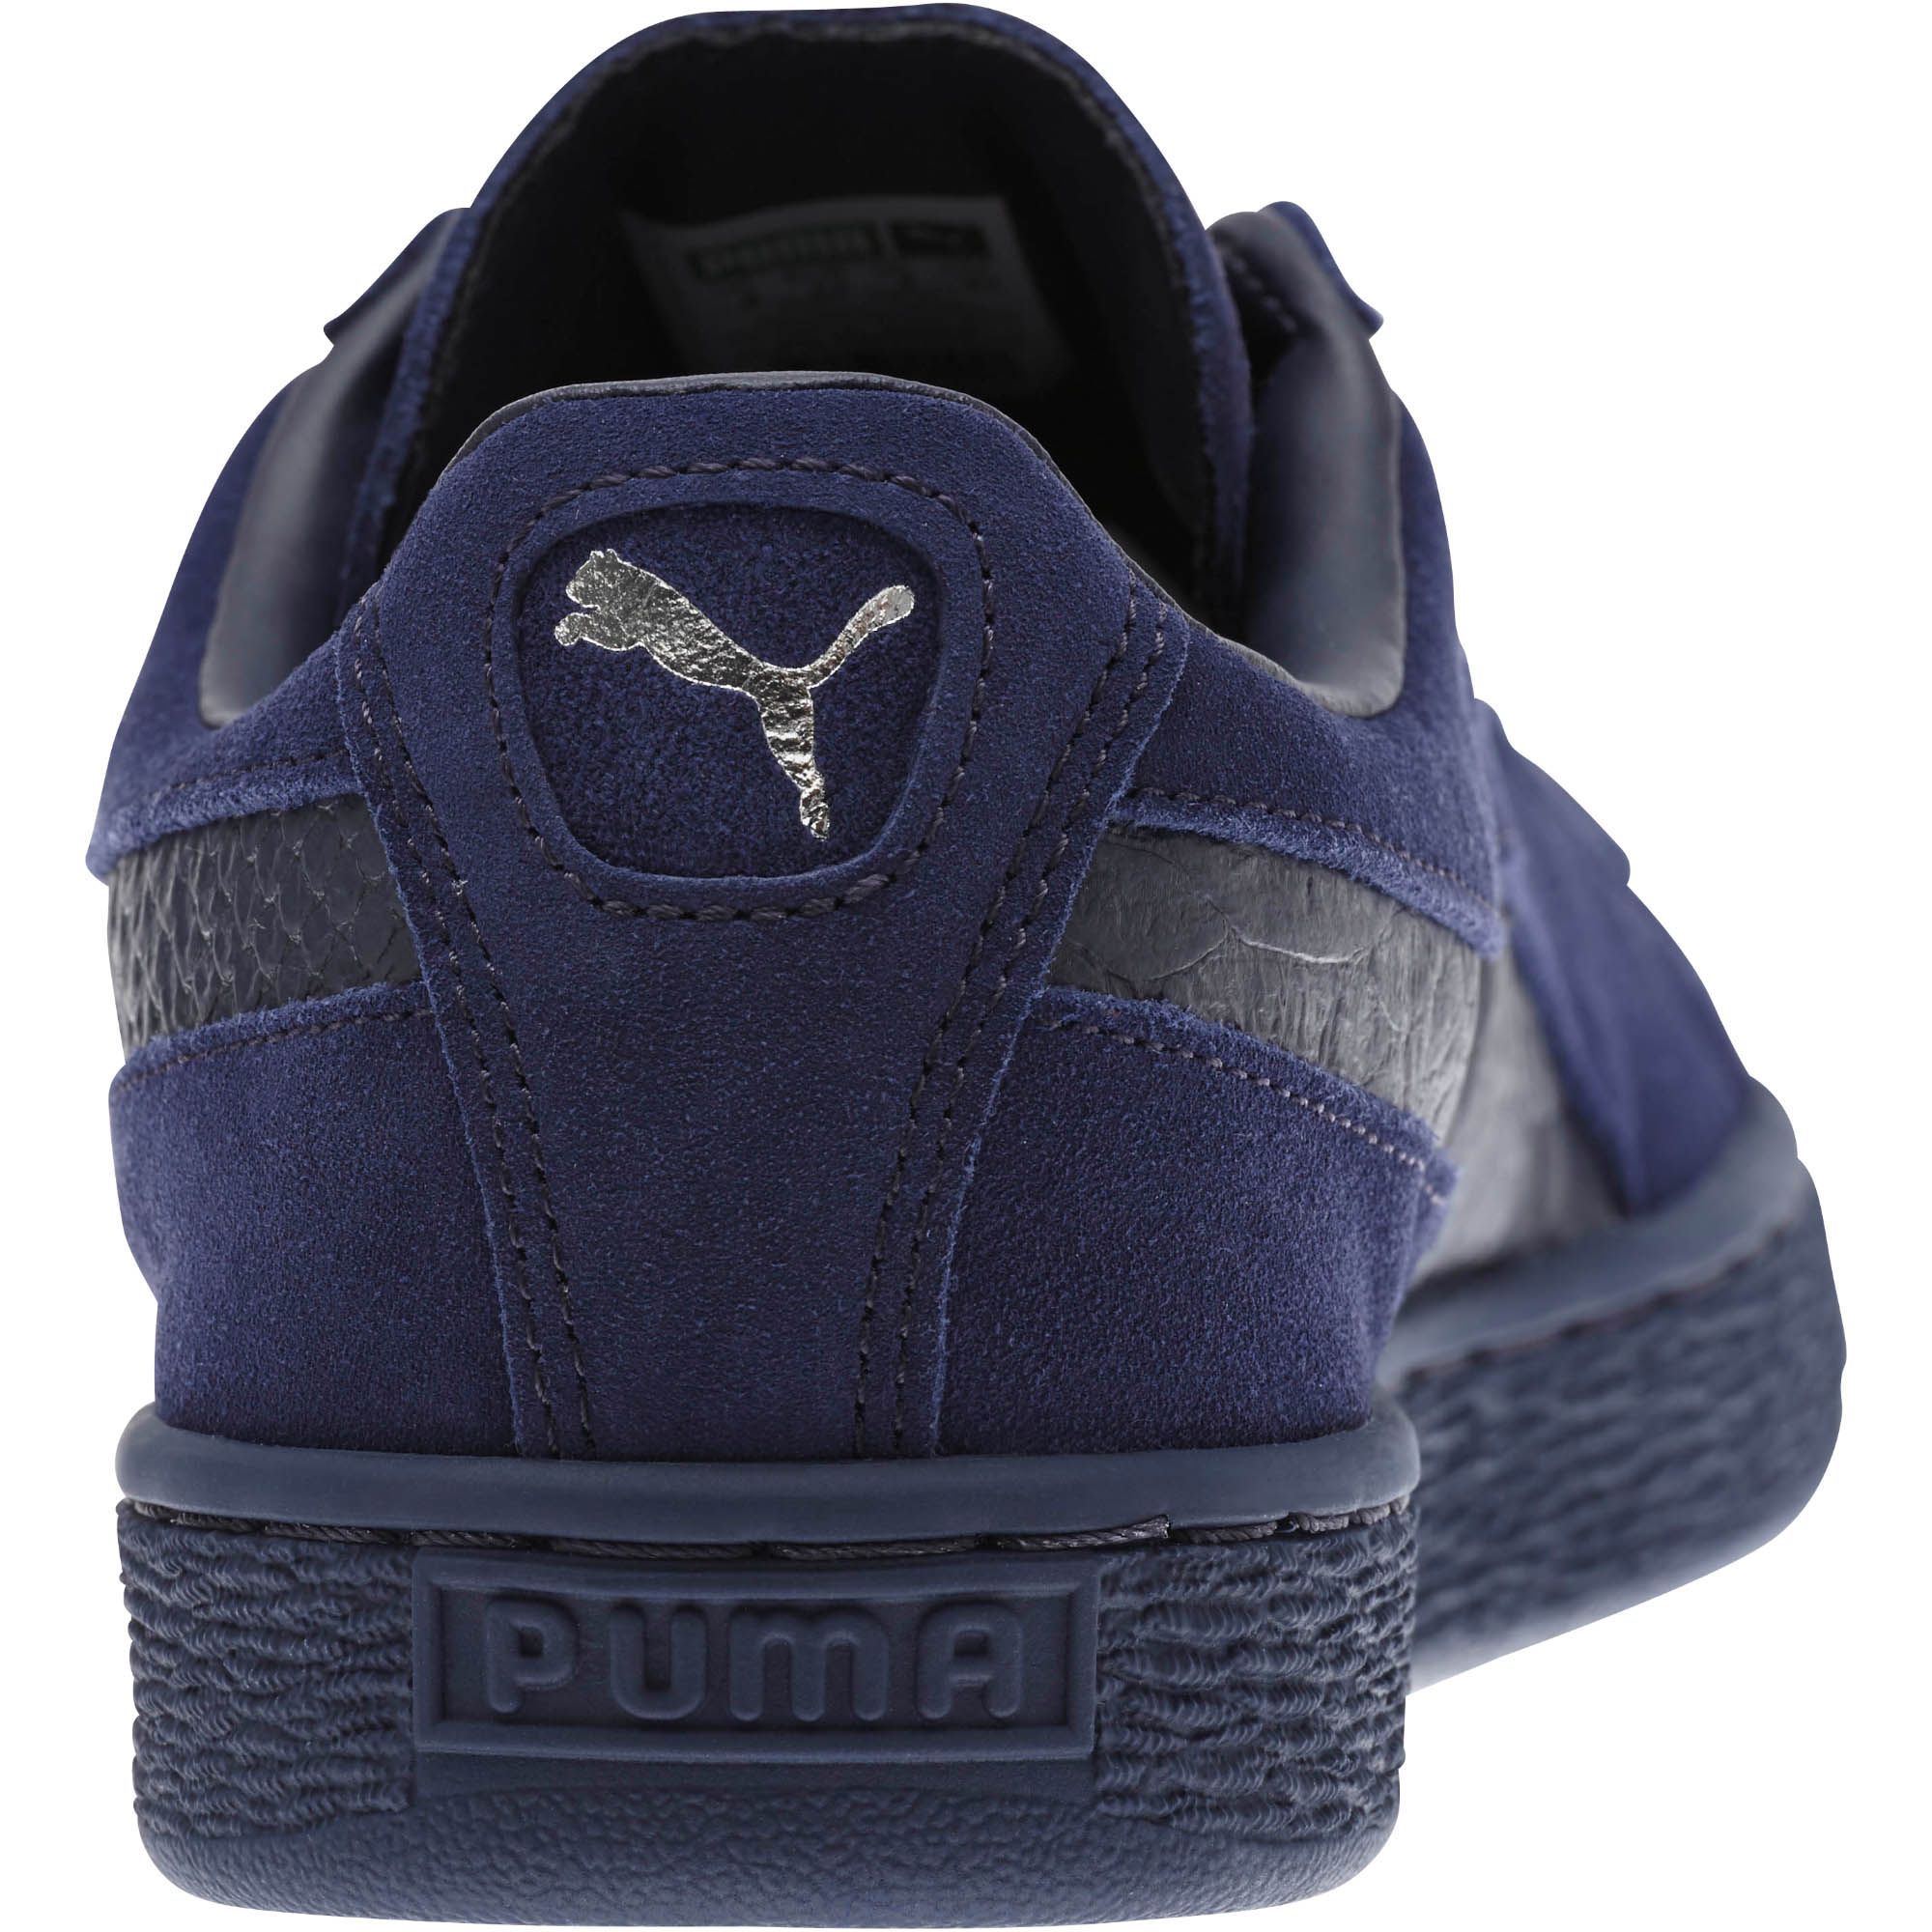 Puma Suede Mono Reptile blue  363164-04